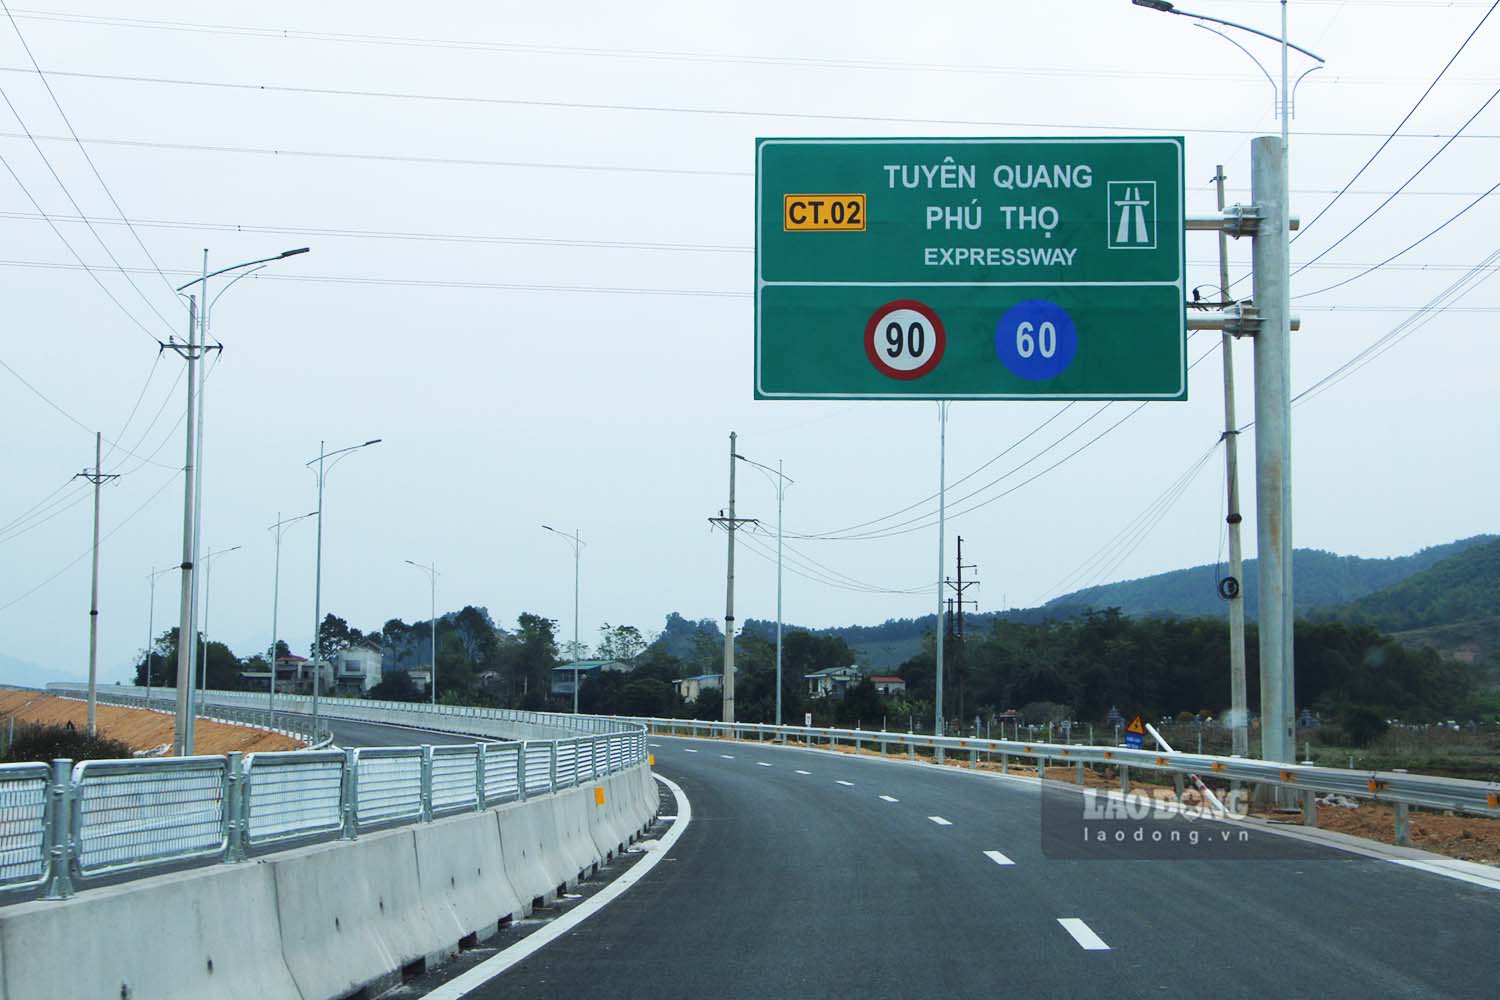 Cao tốc Tuyên Quang - Phú Thọ dài 40,2km, giúp rút ngắn 1/3 thời gian di chuyển từ TP Tuyên Quang đi Hà Nội. Ảnh: Nguyễn Tùng